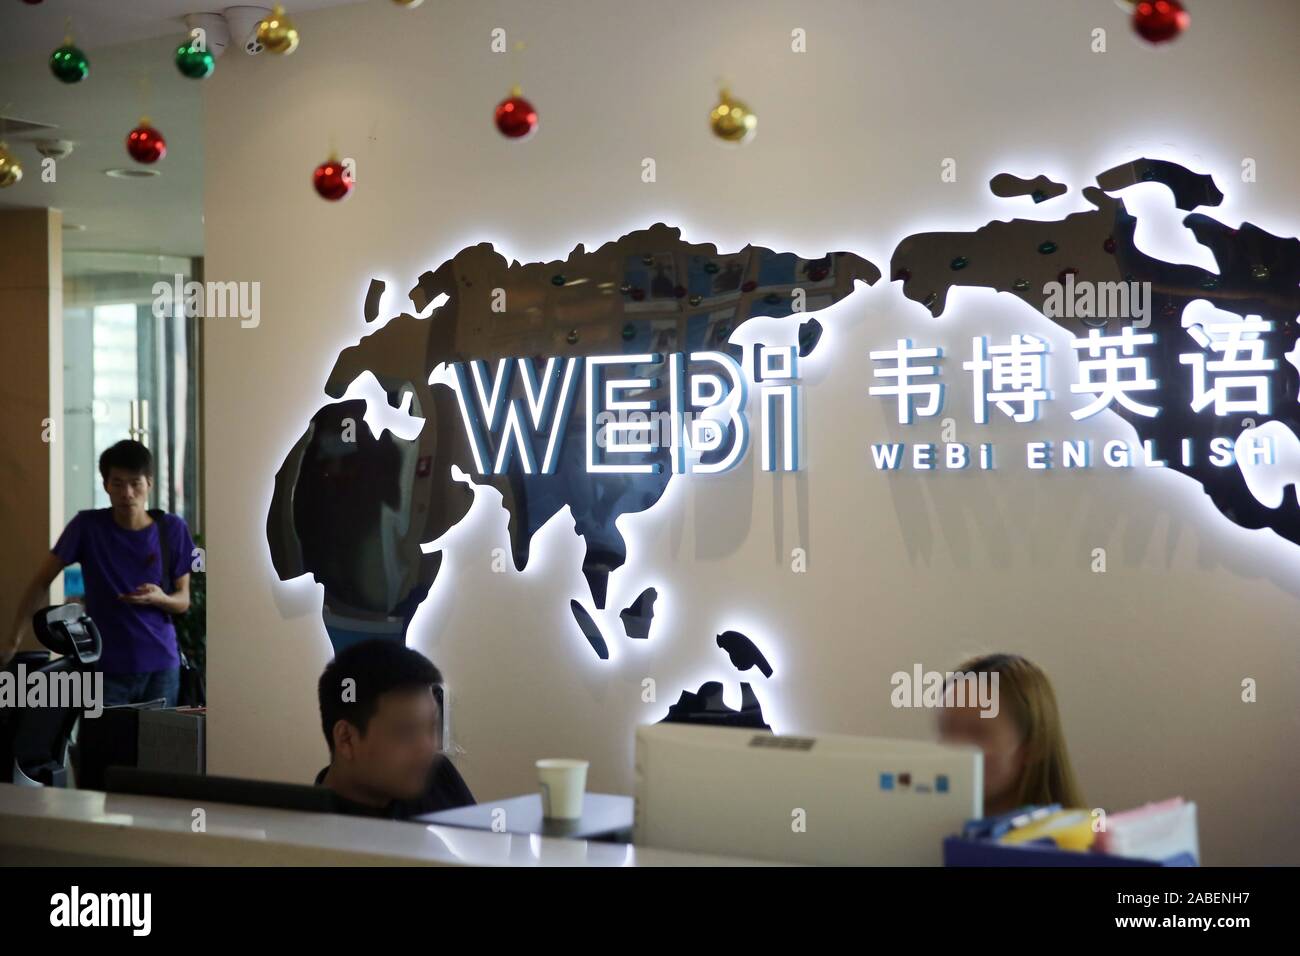 Einen Einblick in eine leere WEBi English School, eine chinesische Marke Language Training Unternehmen streben nach Englisch Bildung, wo keine Klasse durchgeführt wird Stockfoto